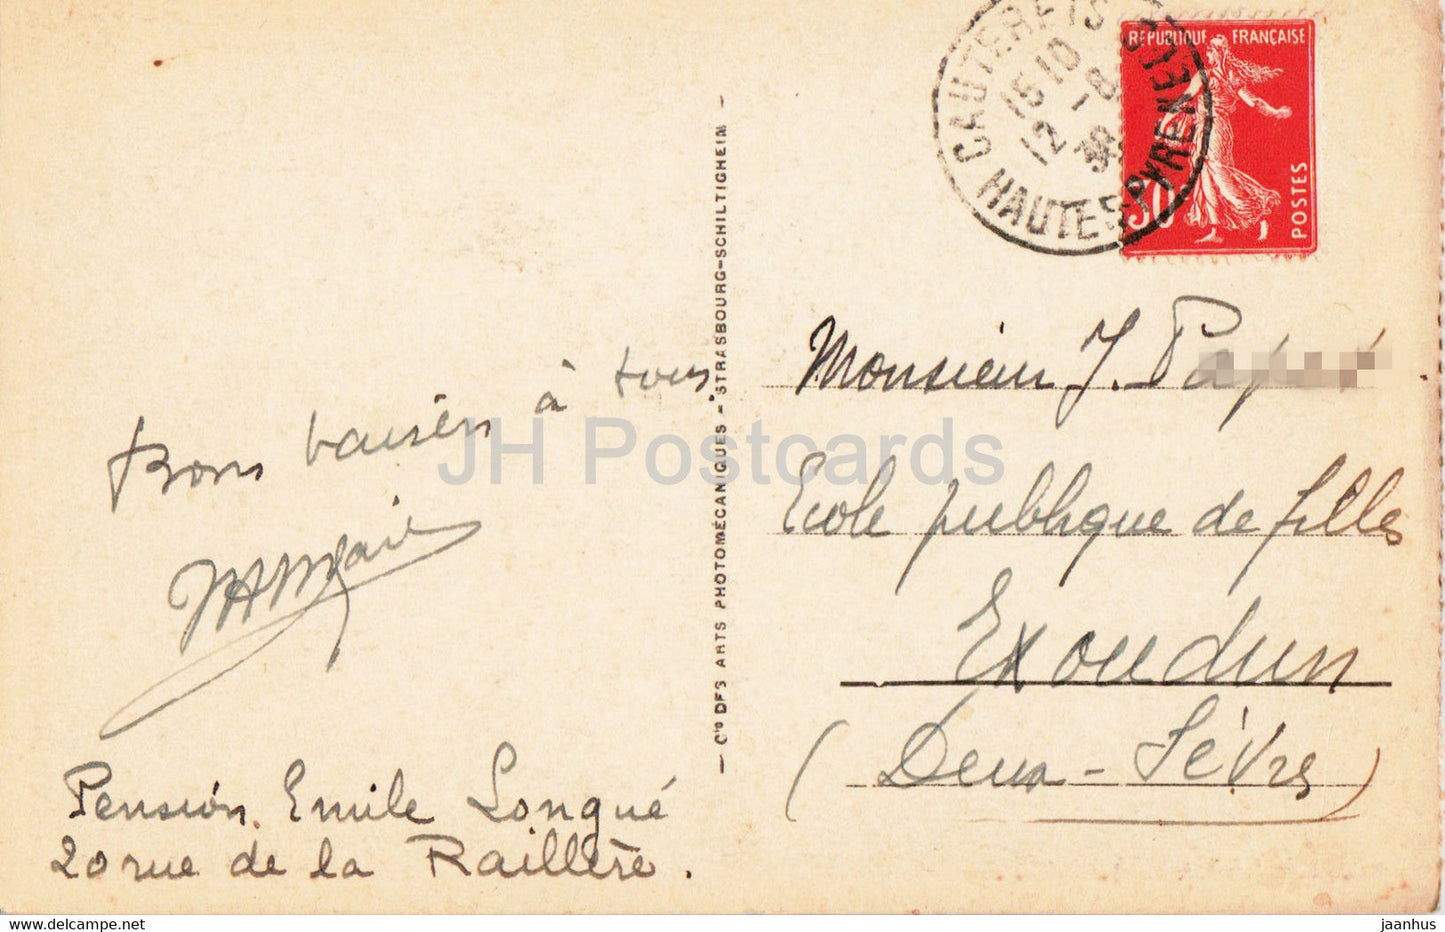 Cauterets - Valle de Lutour - 103 - old postcard - 1938 - France - used